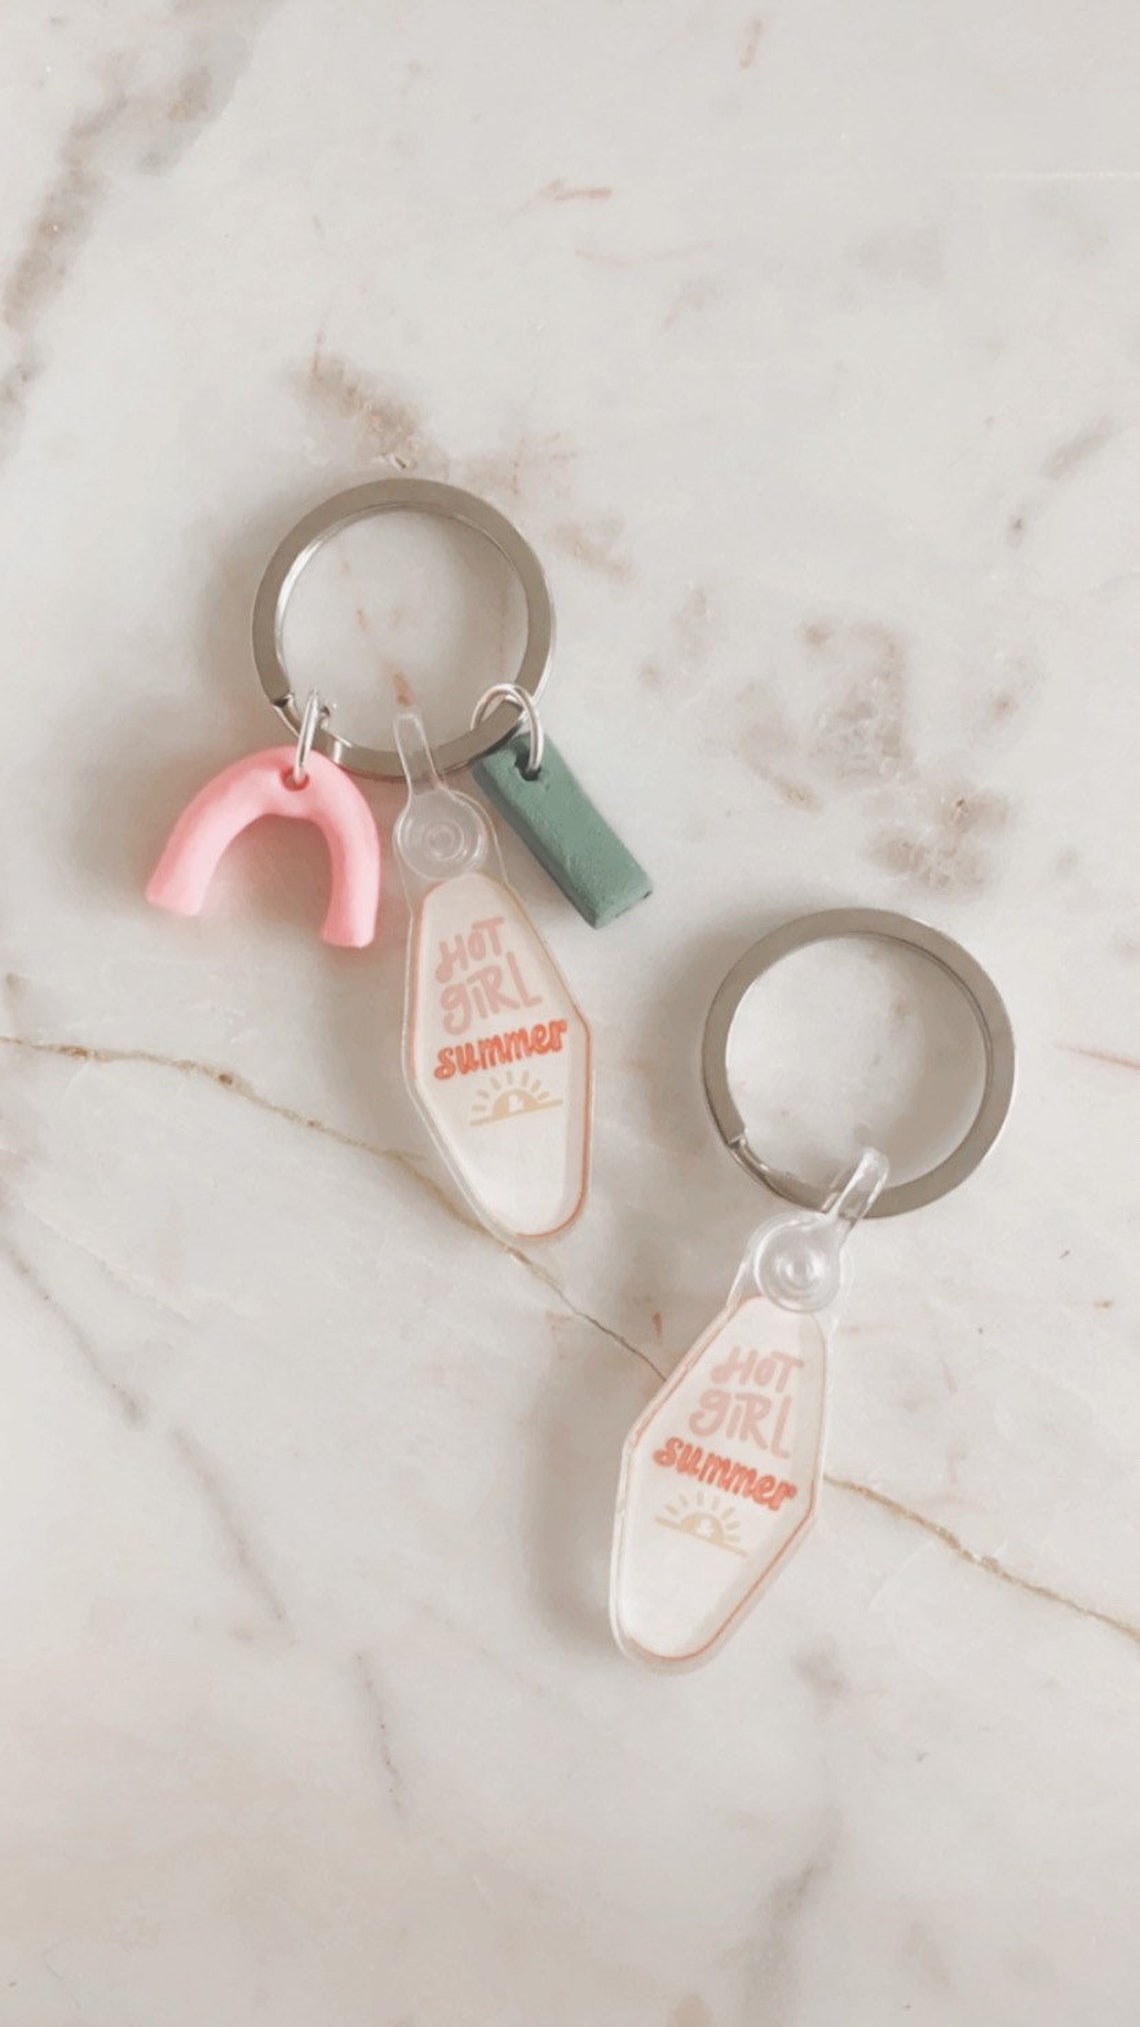 Hot Girl Summer Keychain Keychain accessory cute keys | Etsy